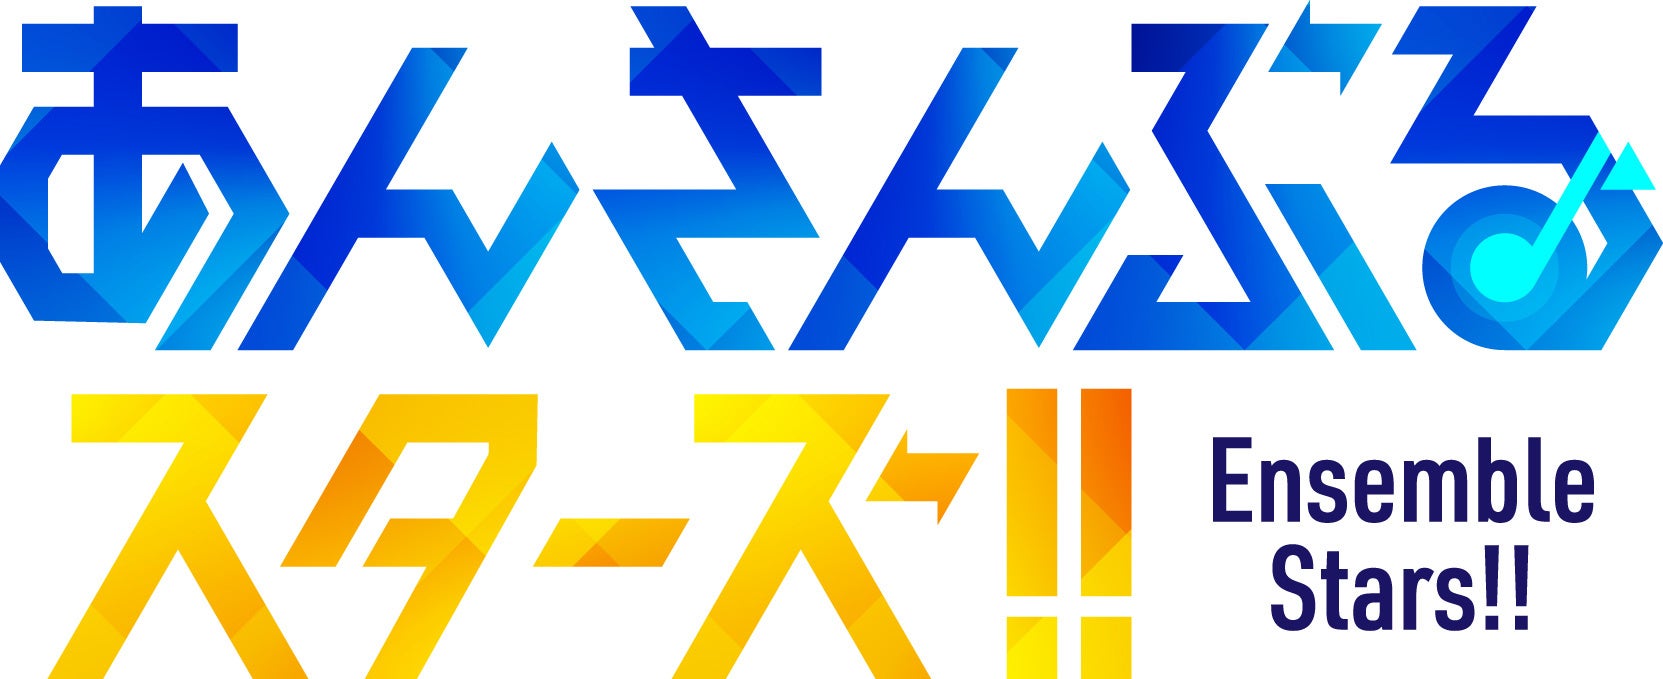 『天野エリカ -浴衣- 1/7スケールフィギュア』ホビーECサイト『F:NEX』にて本日6月22日より予約開始！